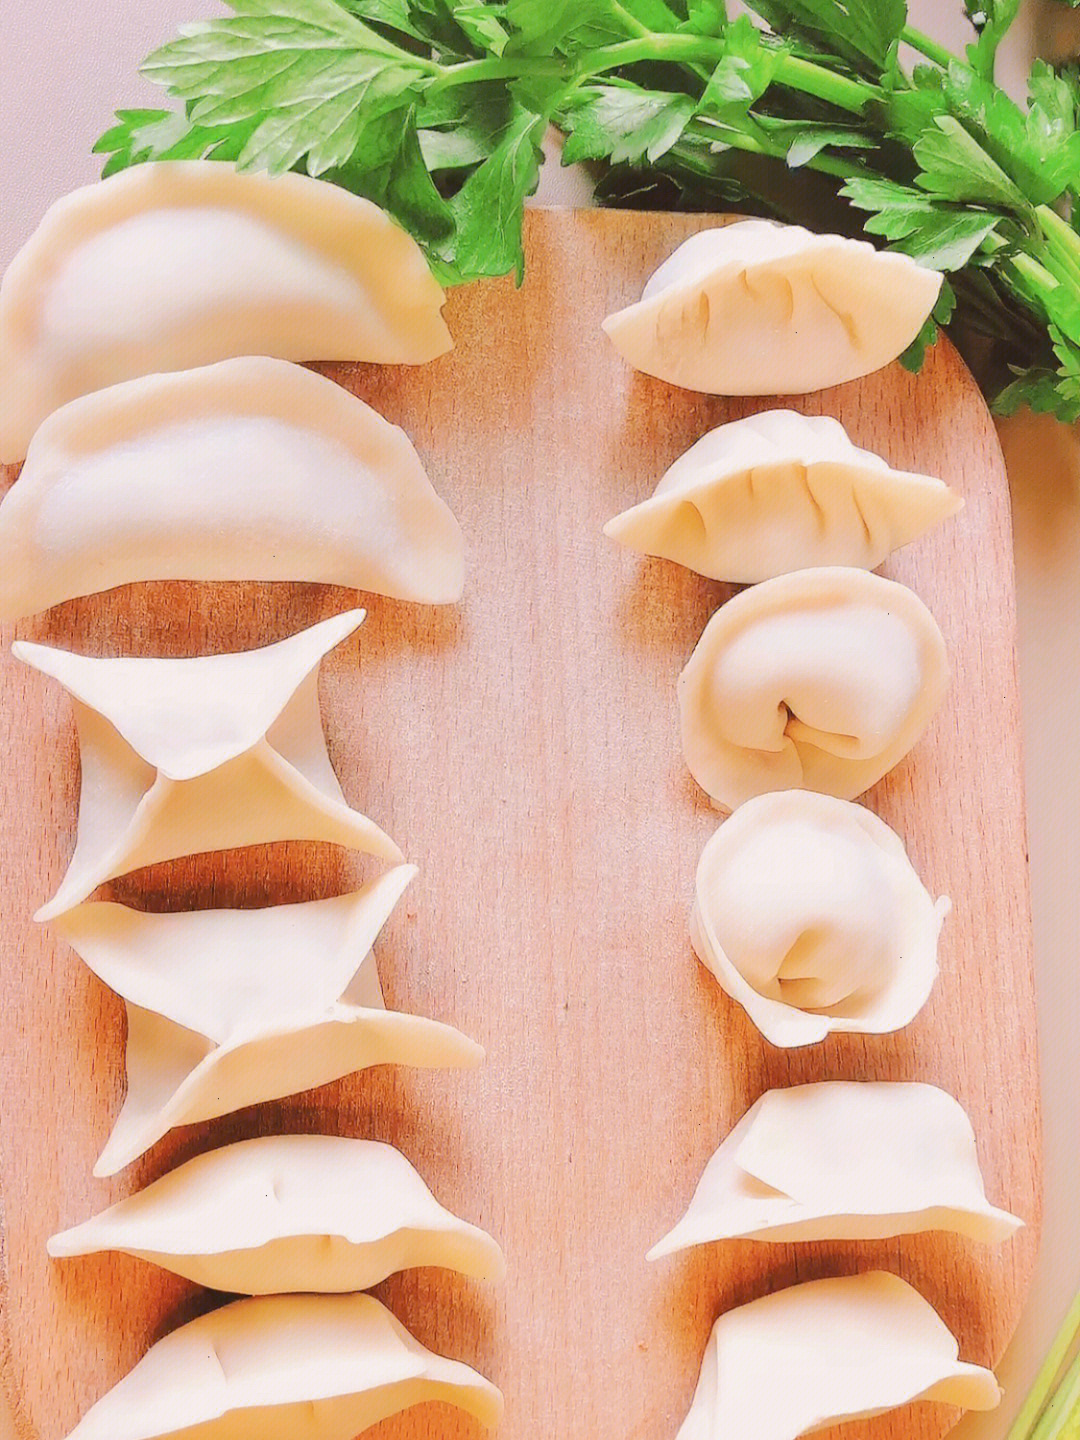 猫耳朵饺子的包法图片